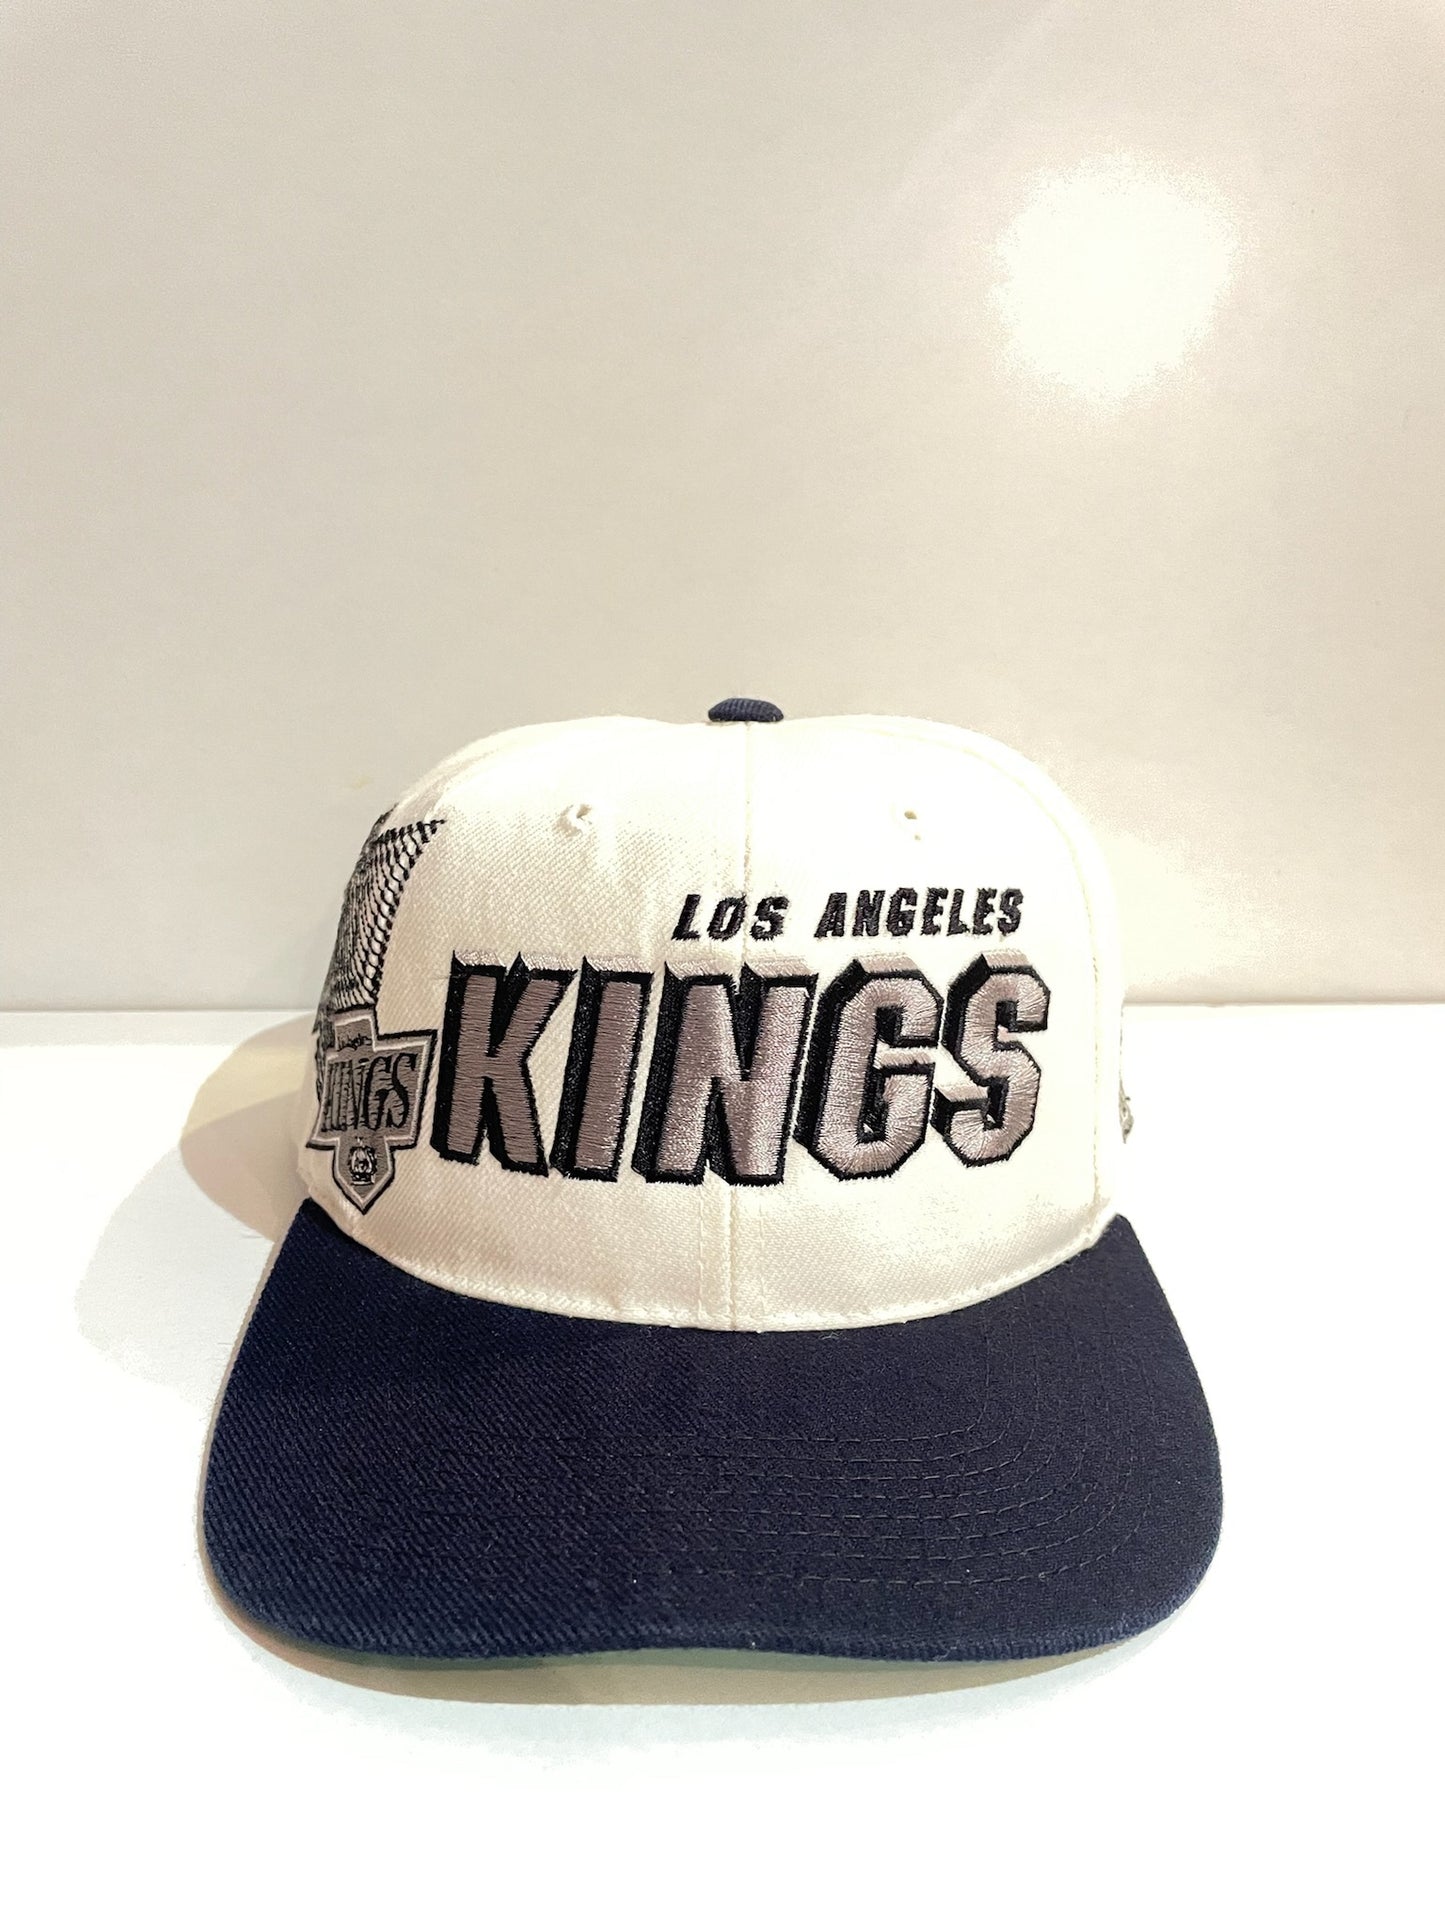 VINTAGE 90s LOS ANGELES KINGS "SHADOW LASER" SPORTS SPECIALTIES SNAPBACK CAP HAT